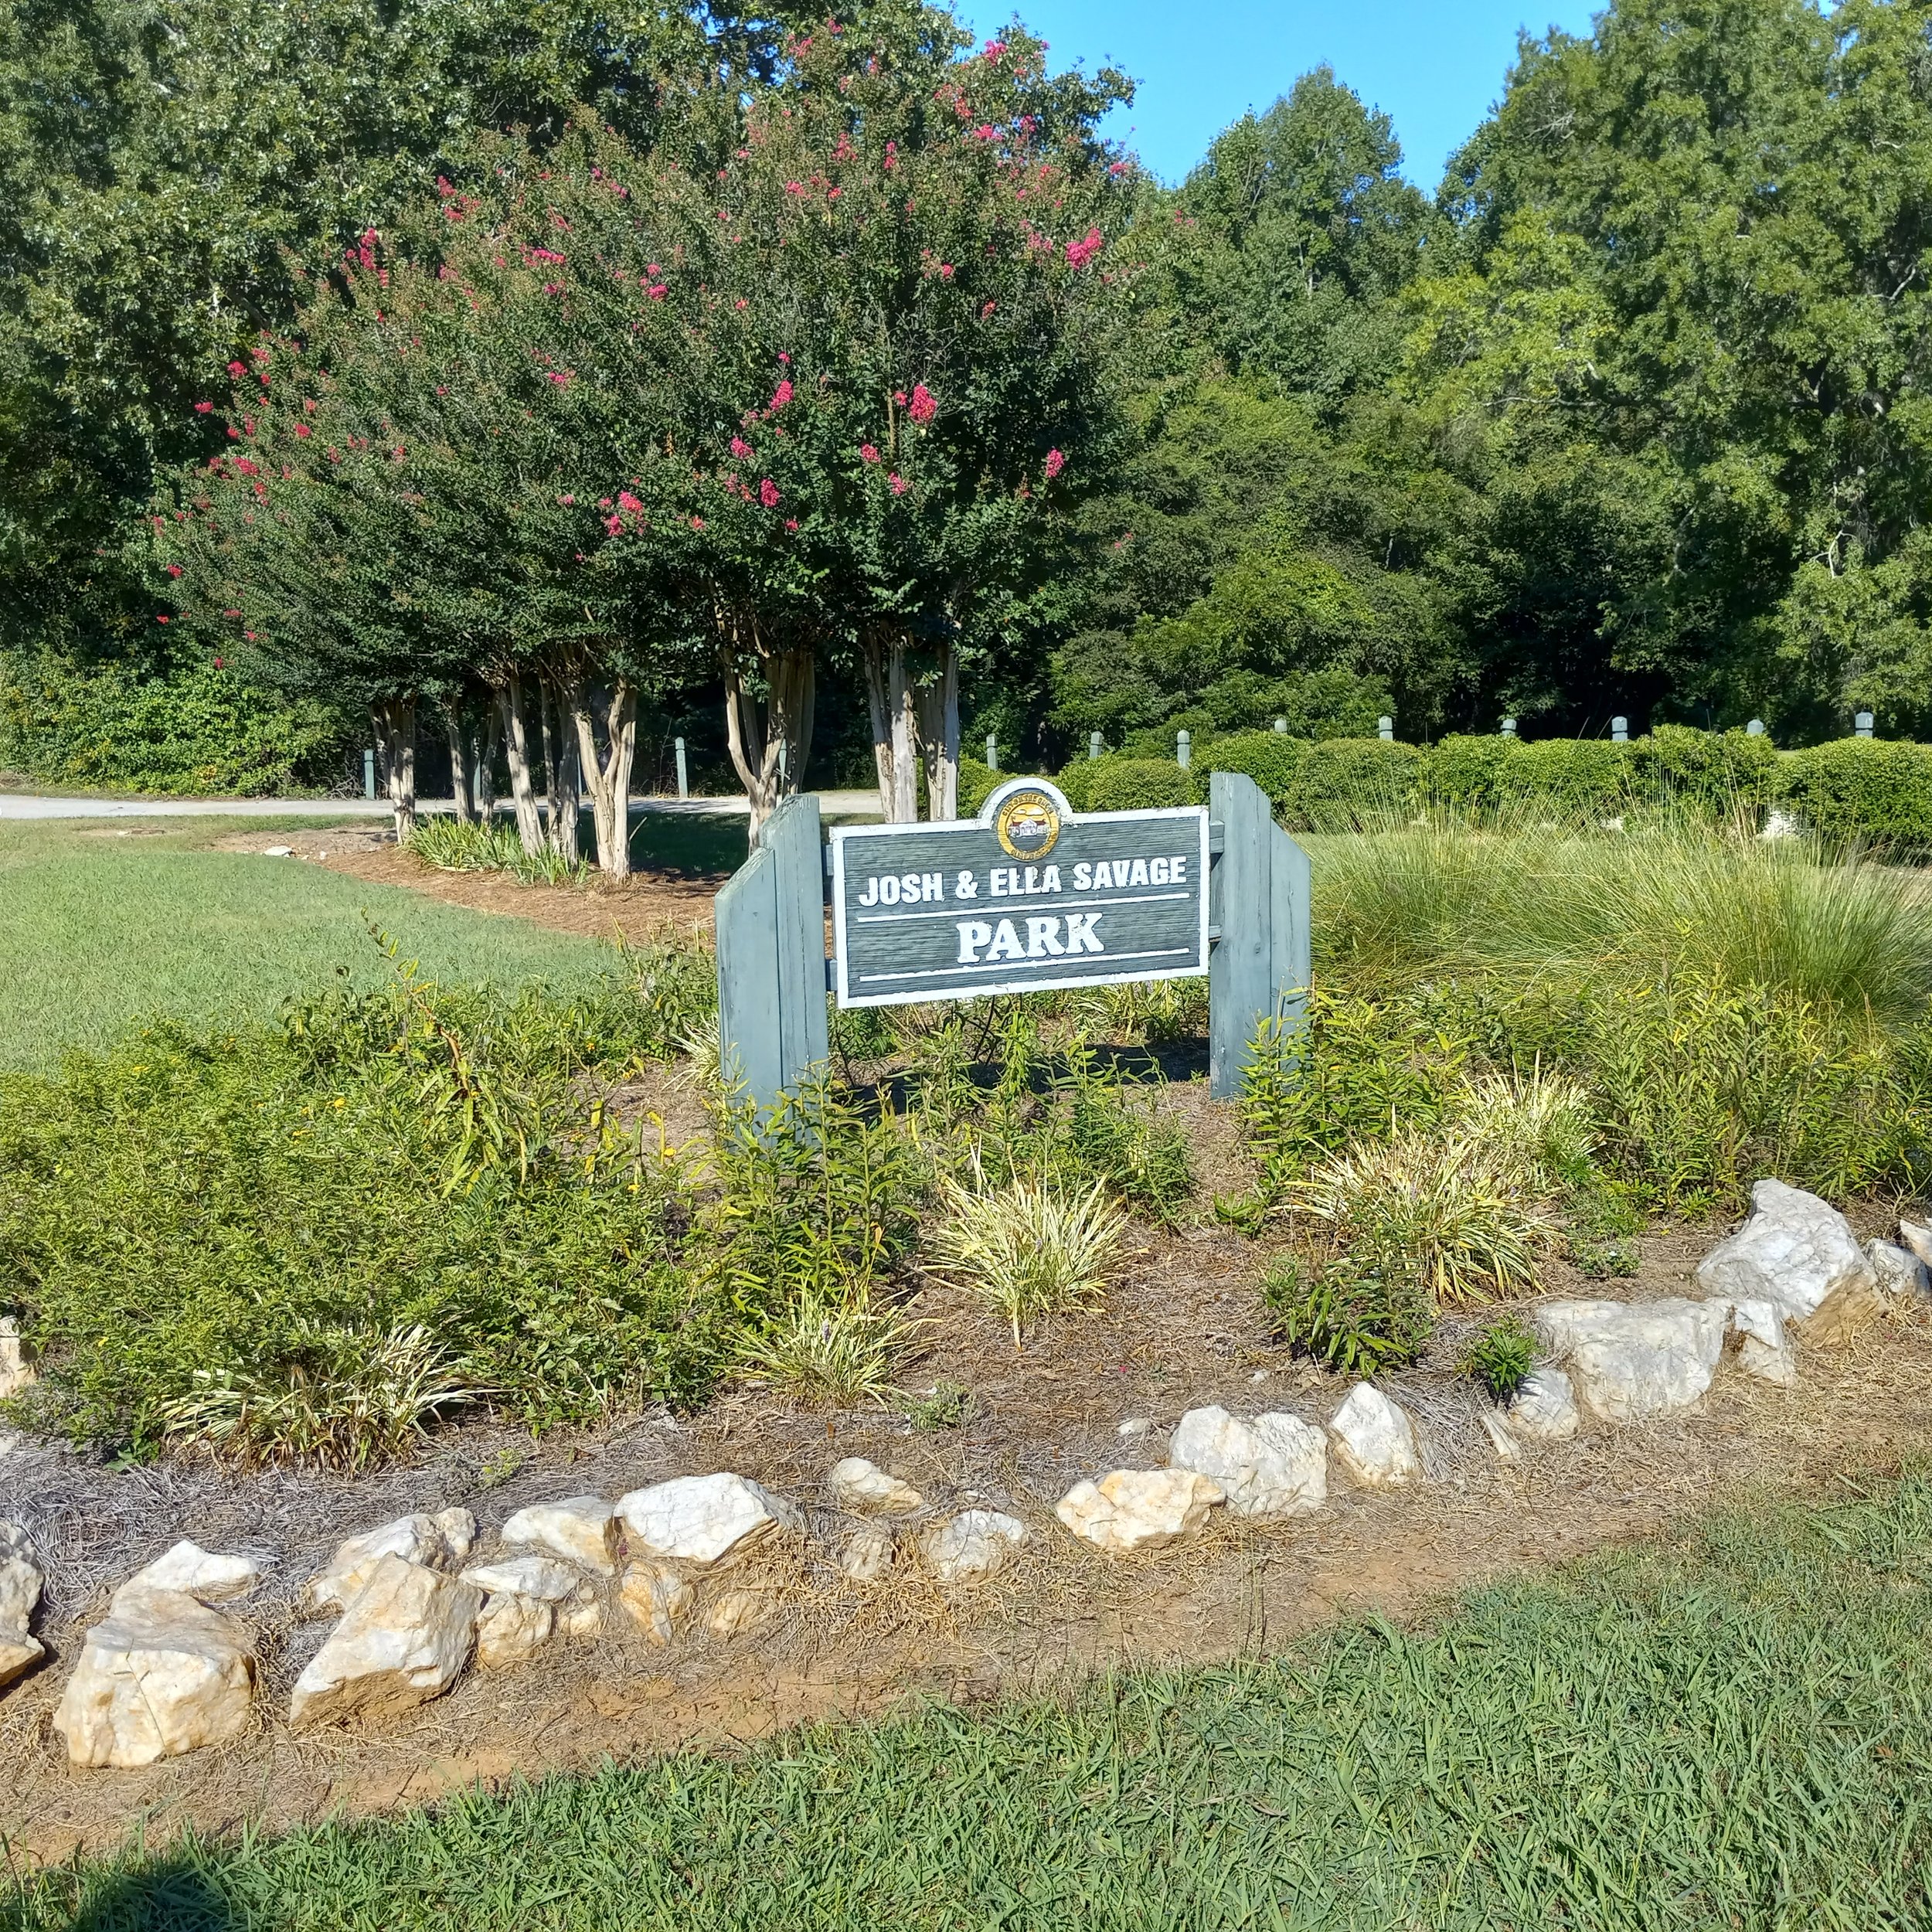 savage park sign and flowerbed.jpg